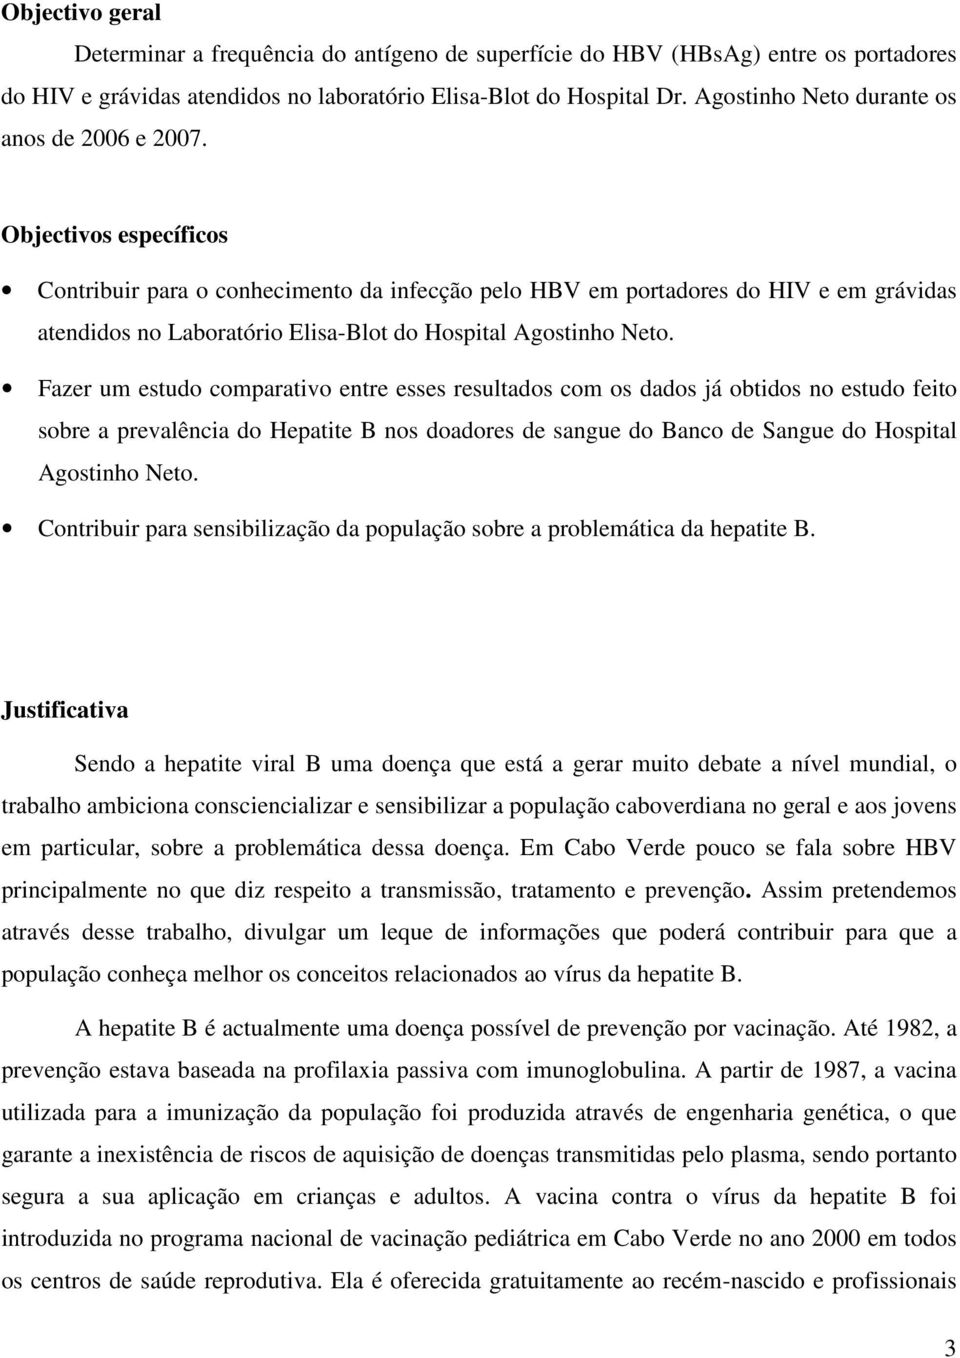 Objectivos específicos Contribuir para o conhecimento da infecção pelo HBV em portadores do HIV e em grávidas atendidos no Laboratório Elisa-Blot do Hospital Agostinho Neto.